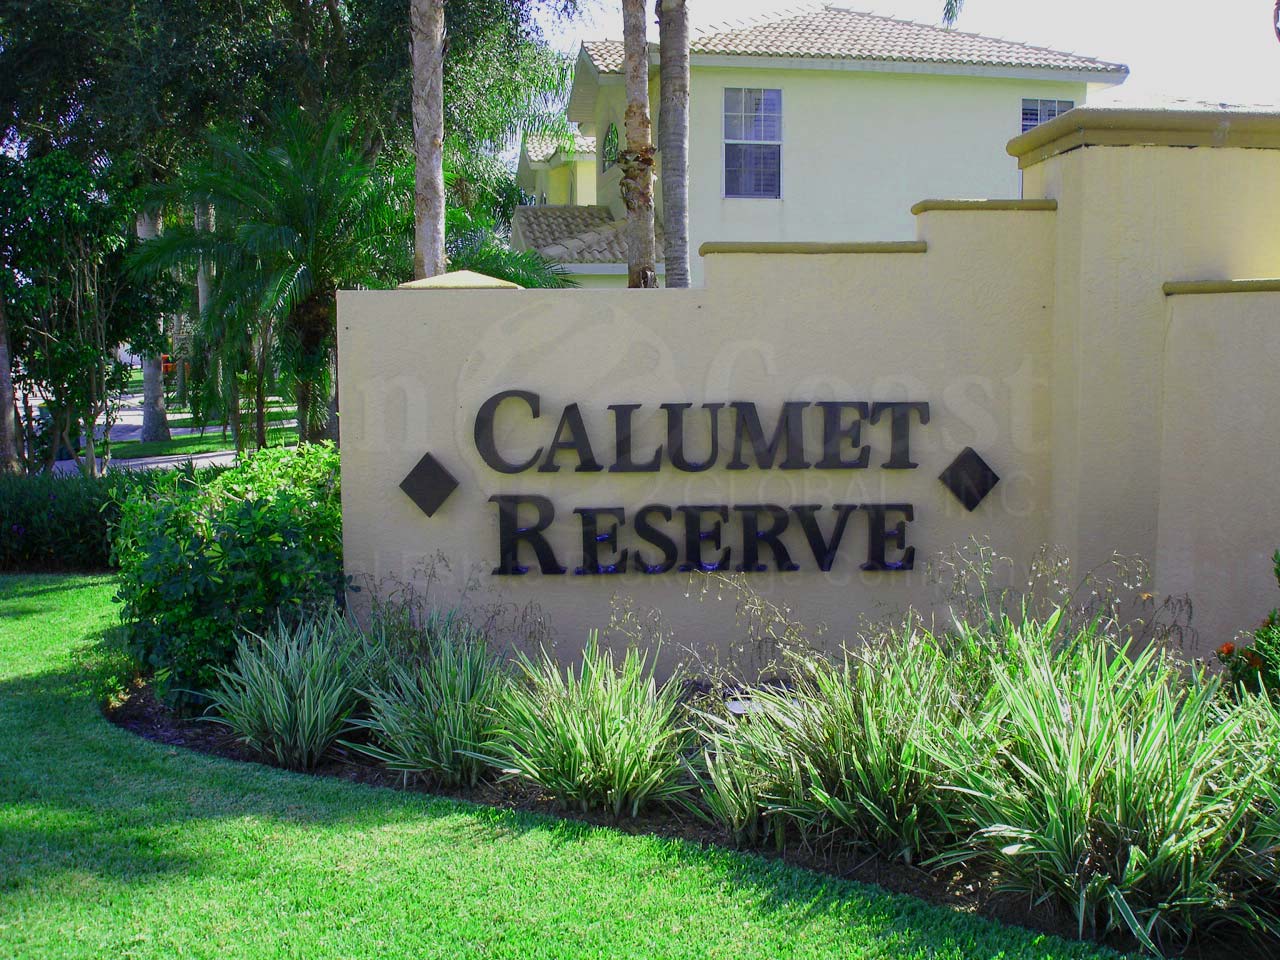 Calumet Reserve Signage